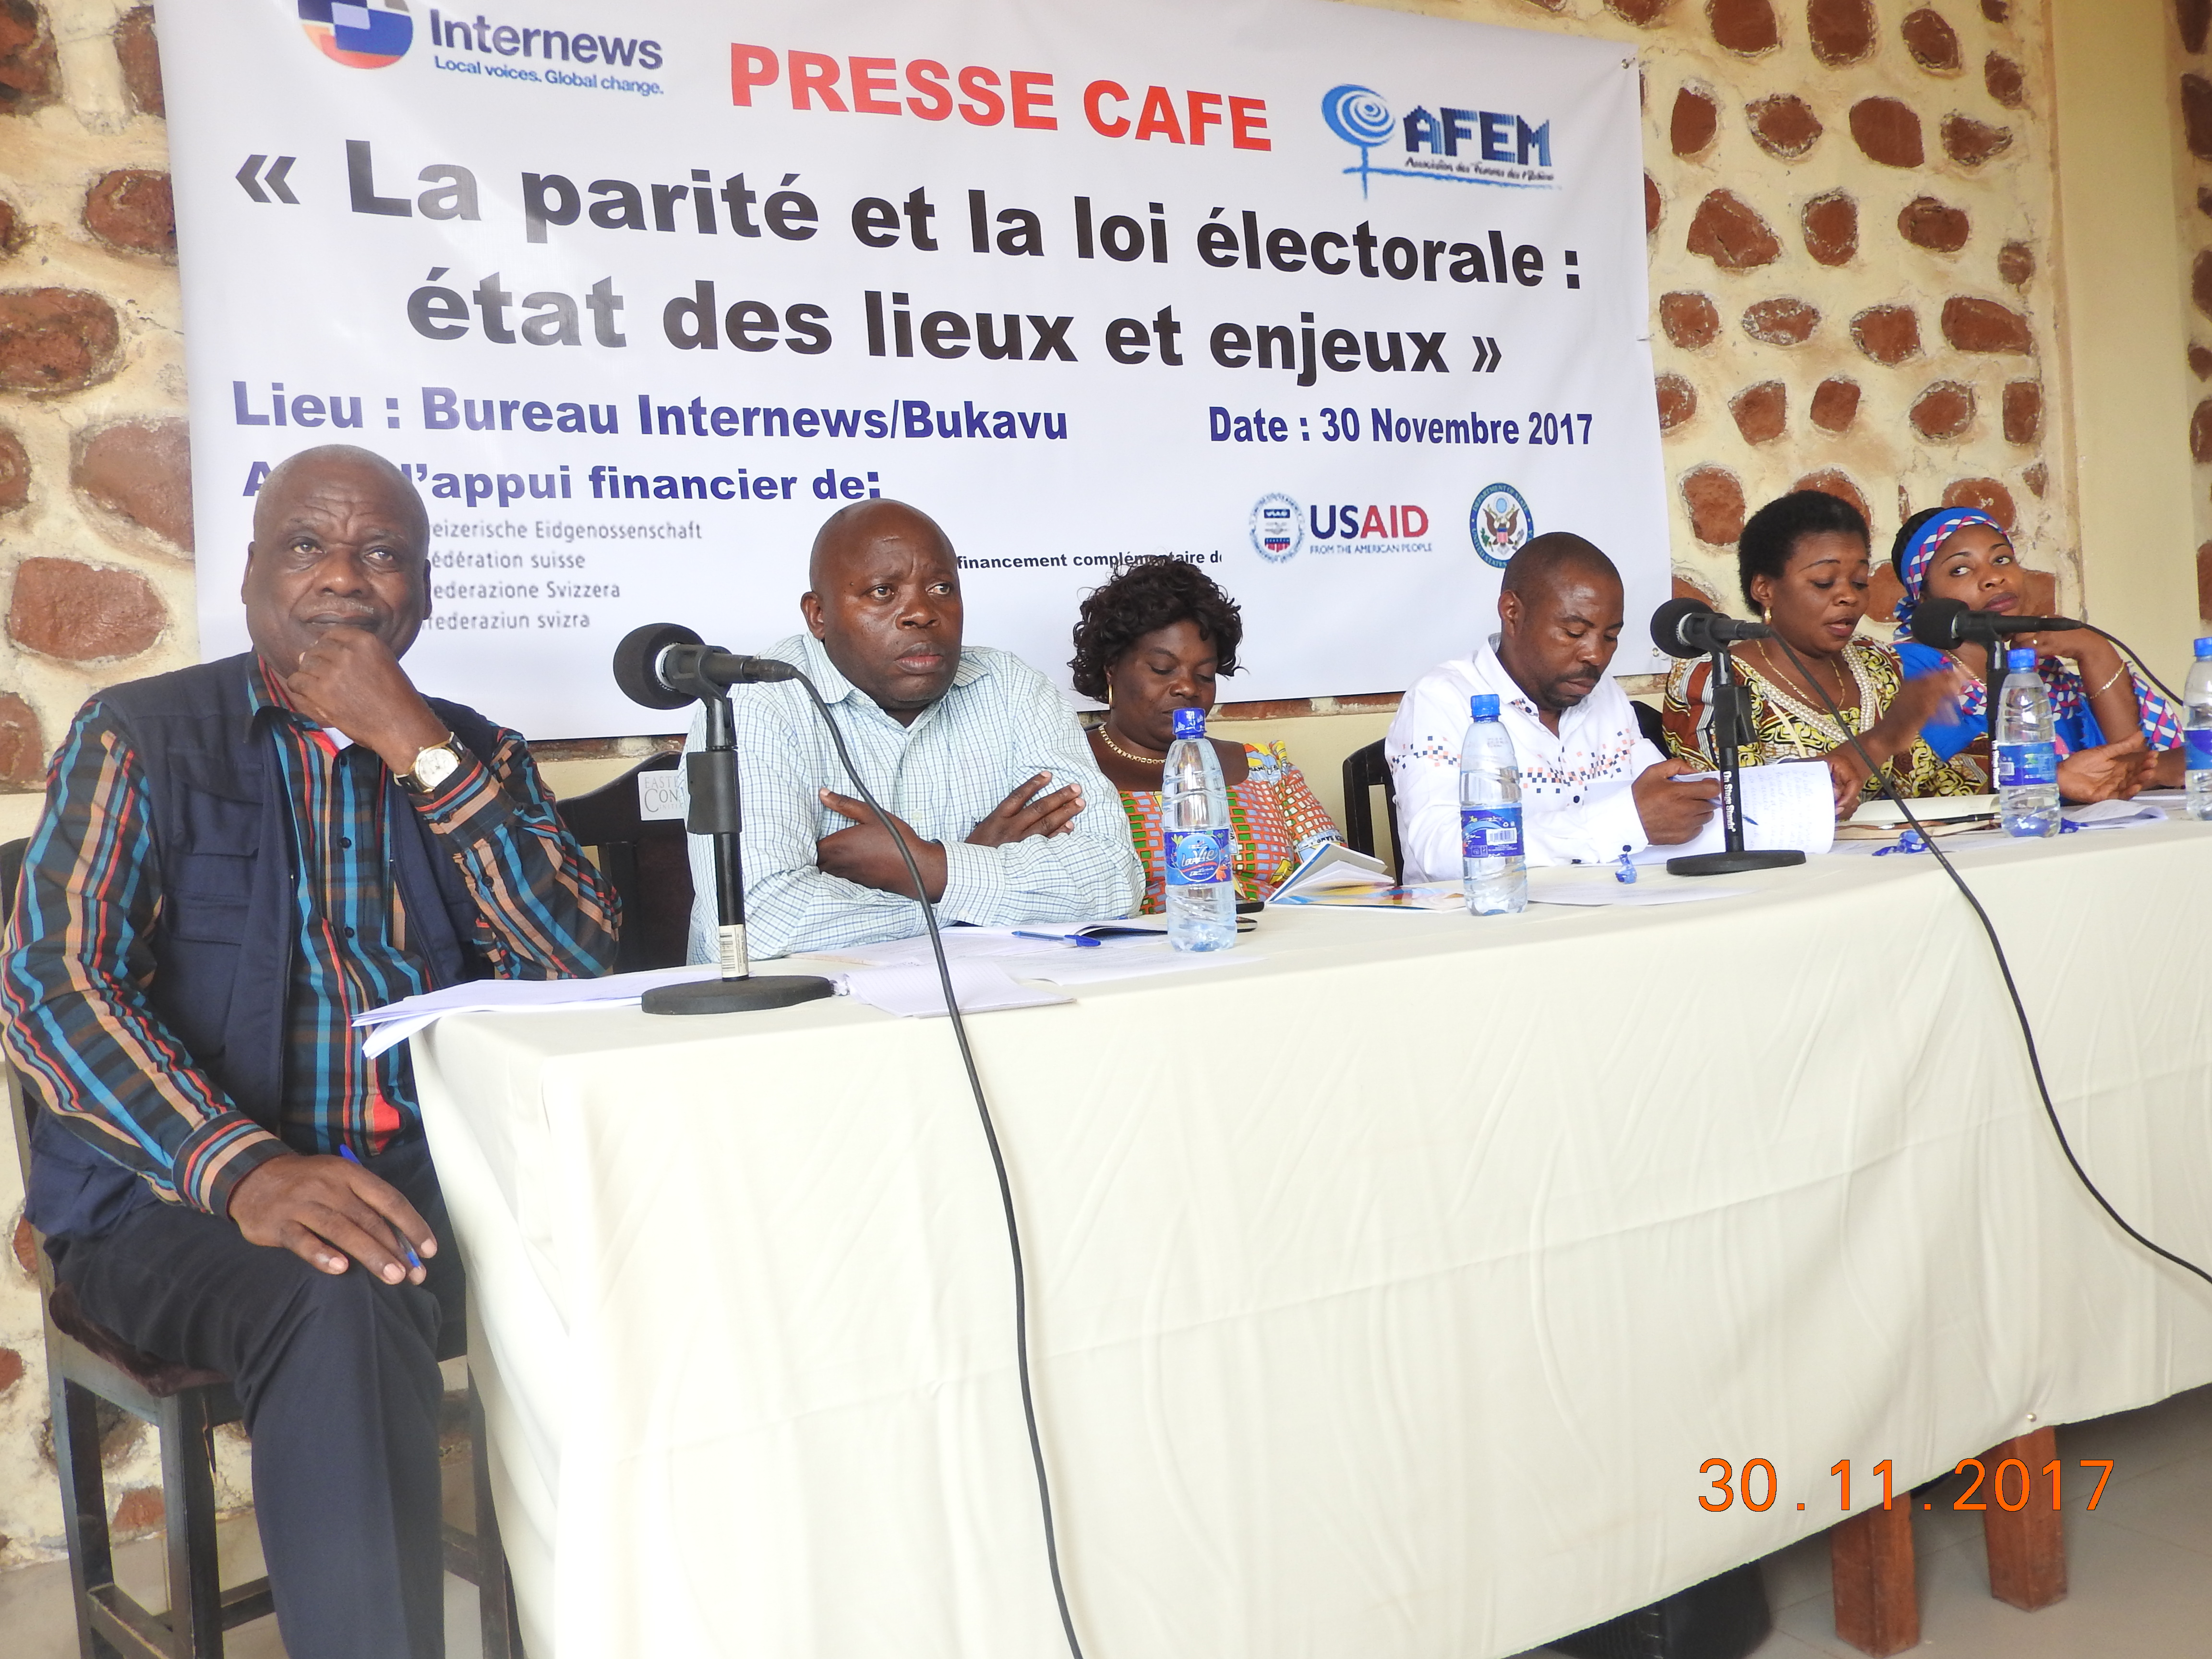 Parité et loi électorale : L’AFEM confirme un véritable recul dans la promotion de la parité au Sud-Kivu